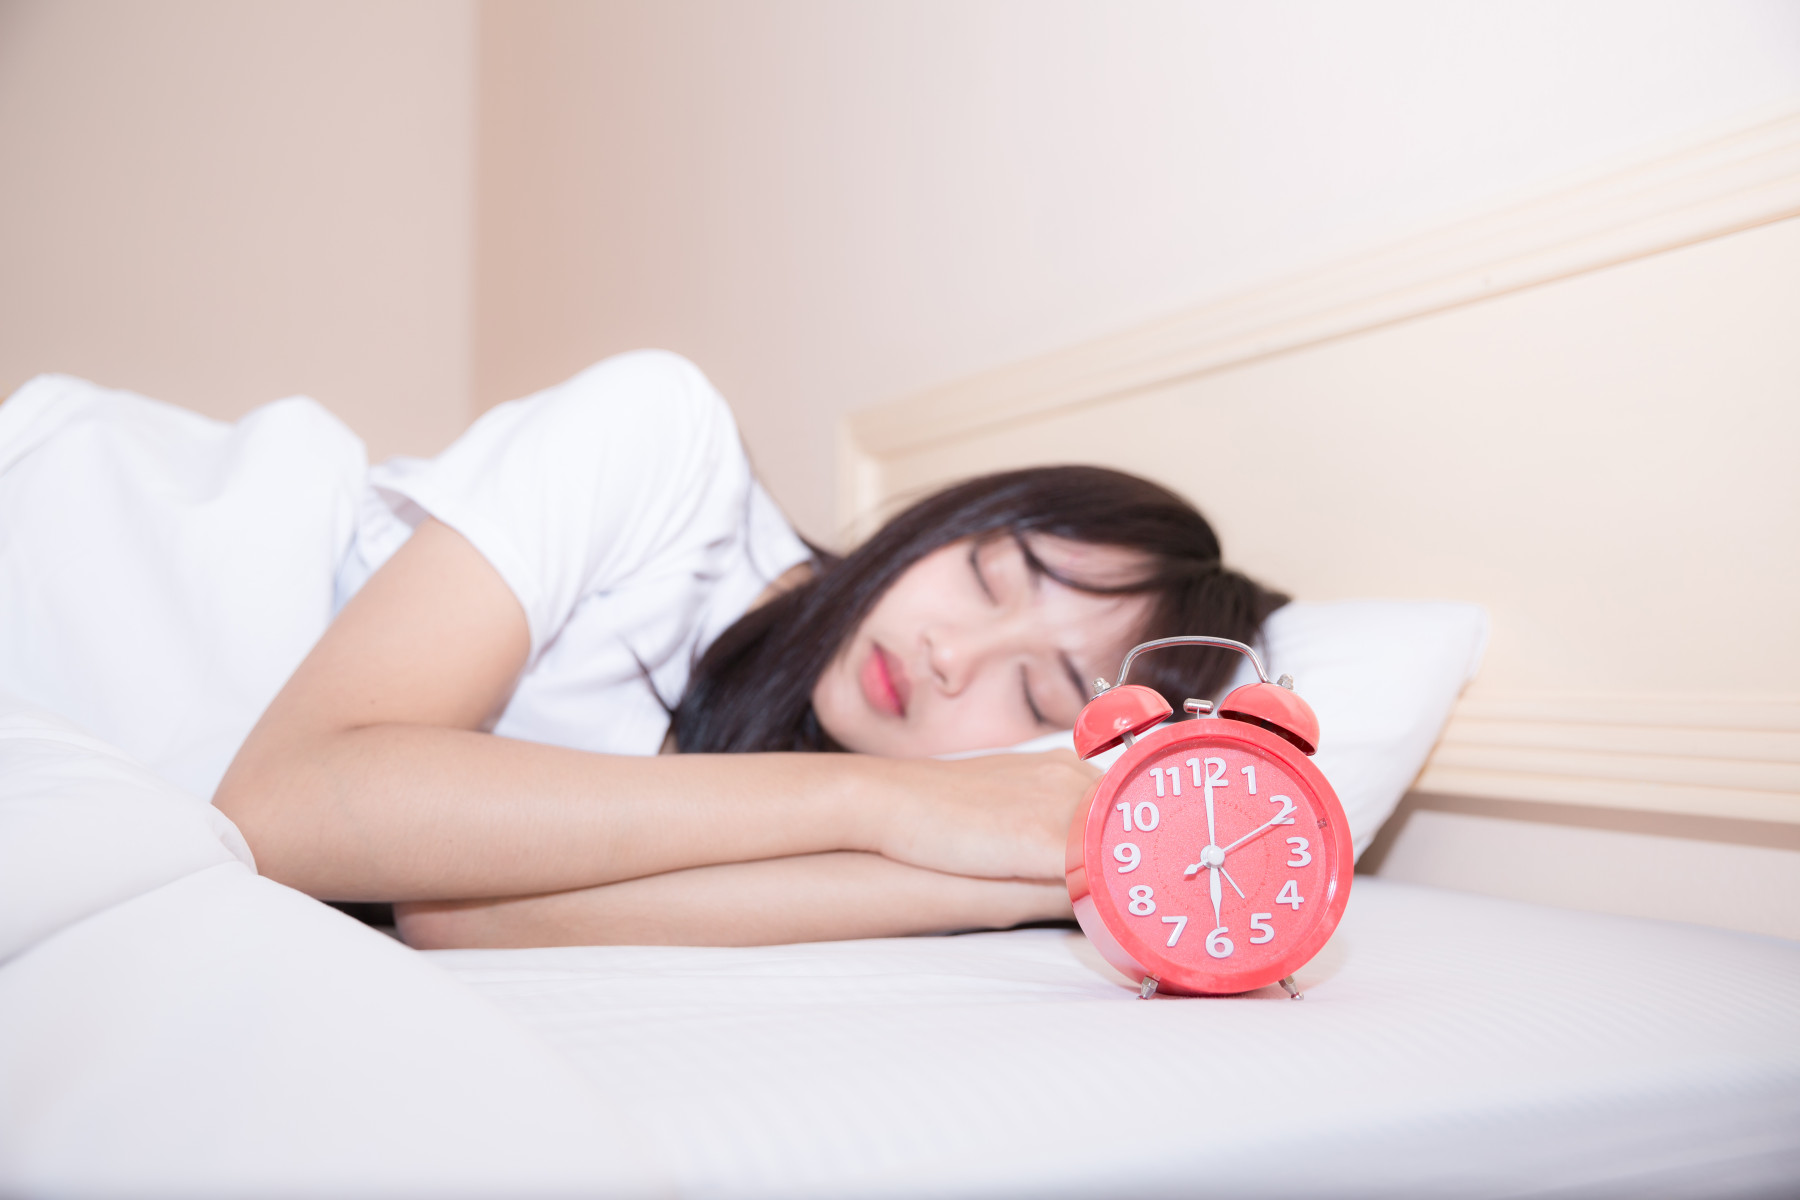 Hoạt Huyết Dưỡng Não Natto: Cải thiện giấc ngủ, sức khỏe và tuần hoàn máu